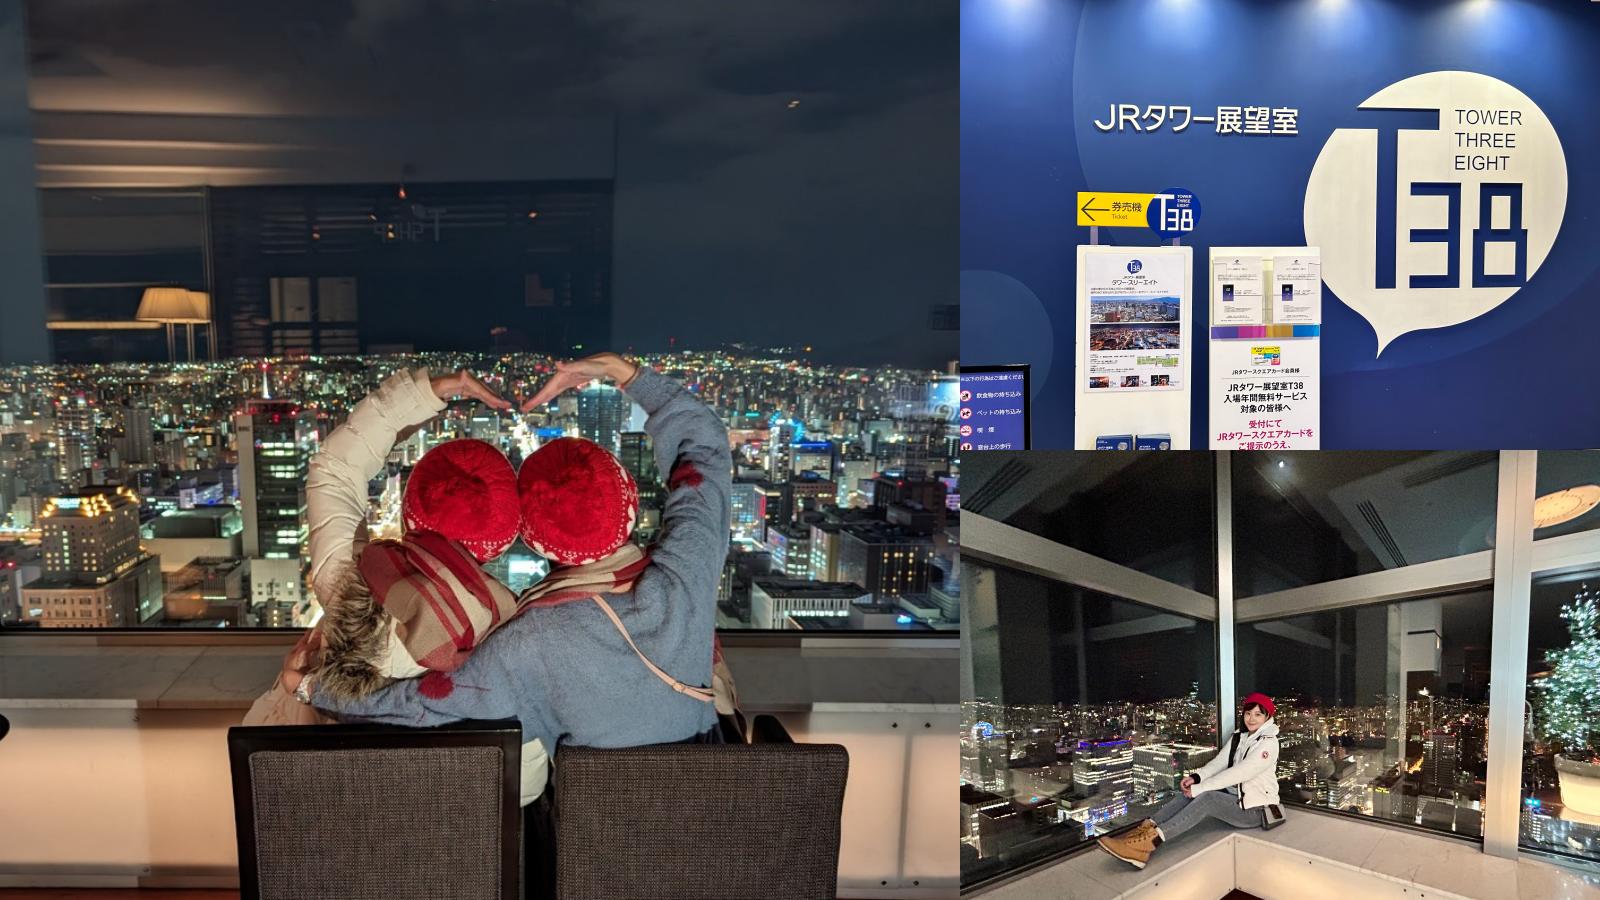 ☆【北海道】JR 塔展望室 T38。北海道最高觀景臺360度高空環景，門票+下午茶套票先買起來！ @凱的日本食尚日記